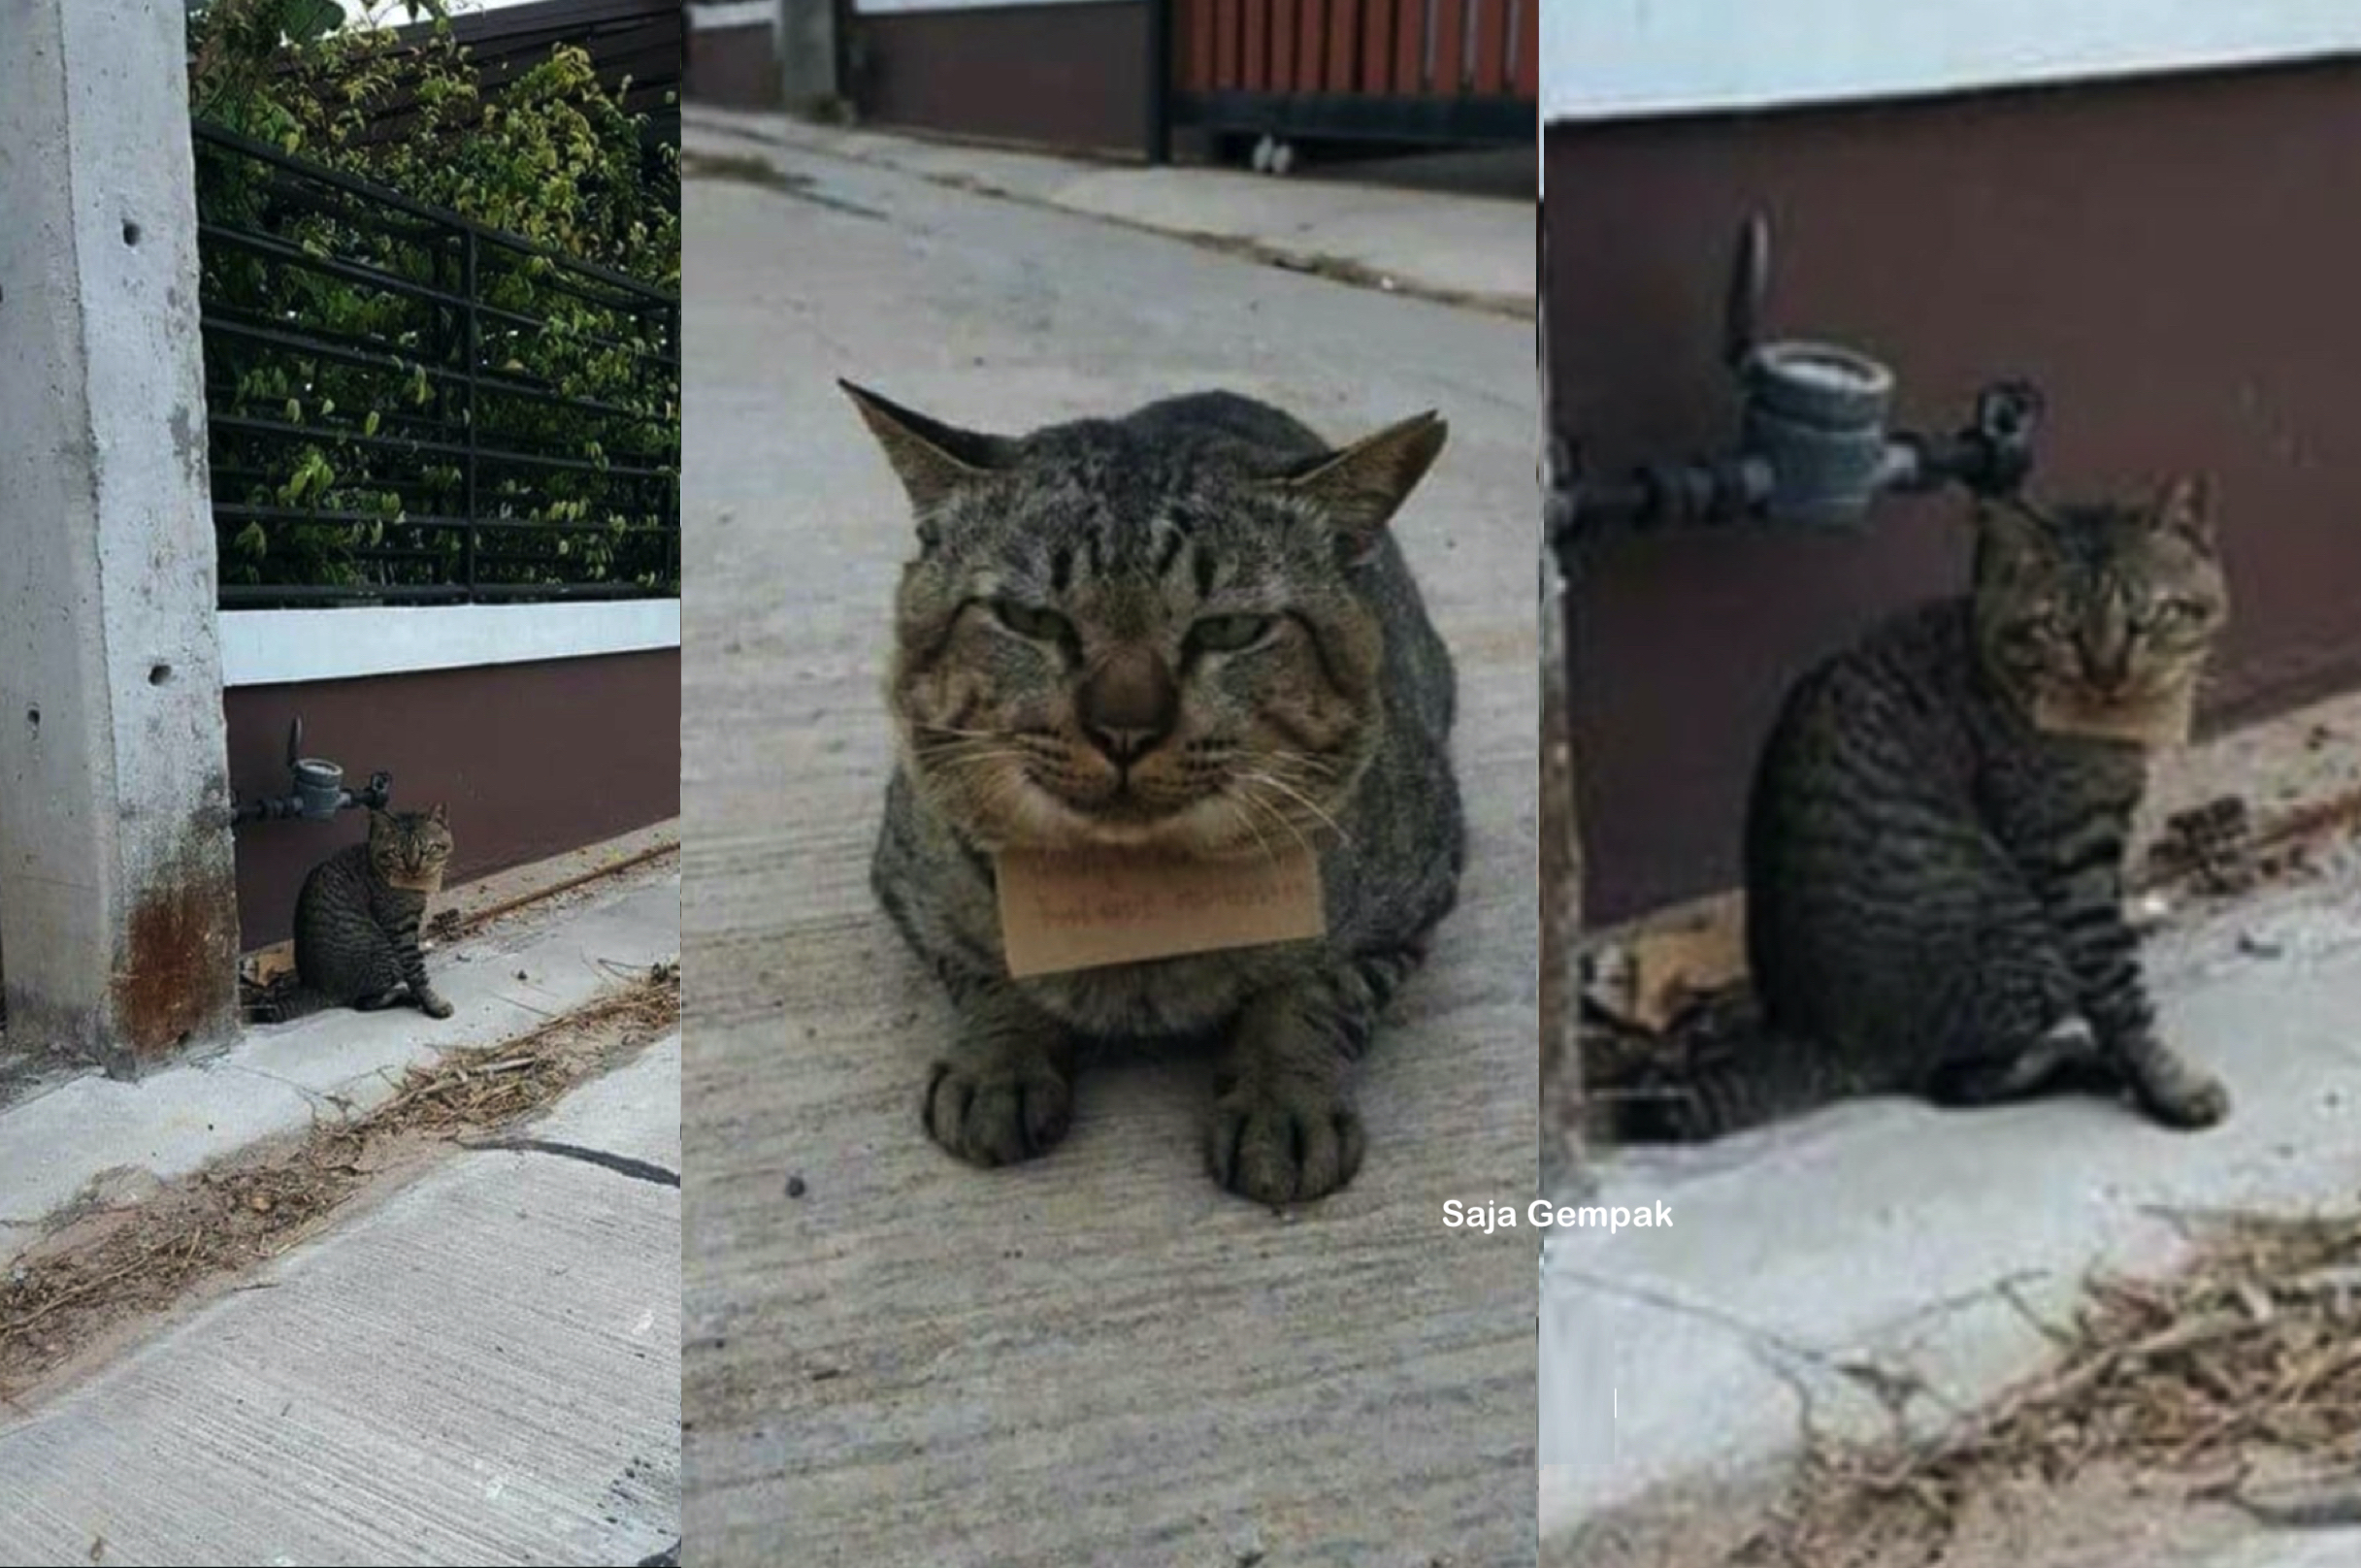 Tiga Hari Hilang, Pemilik Terkejut Kucingnya Pulang Semula Bersama 'Nota' Tertulis Rahsia Kehilangannya - sajagempak.com